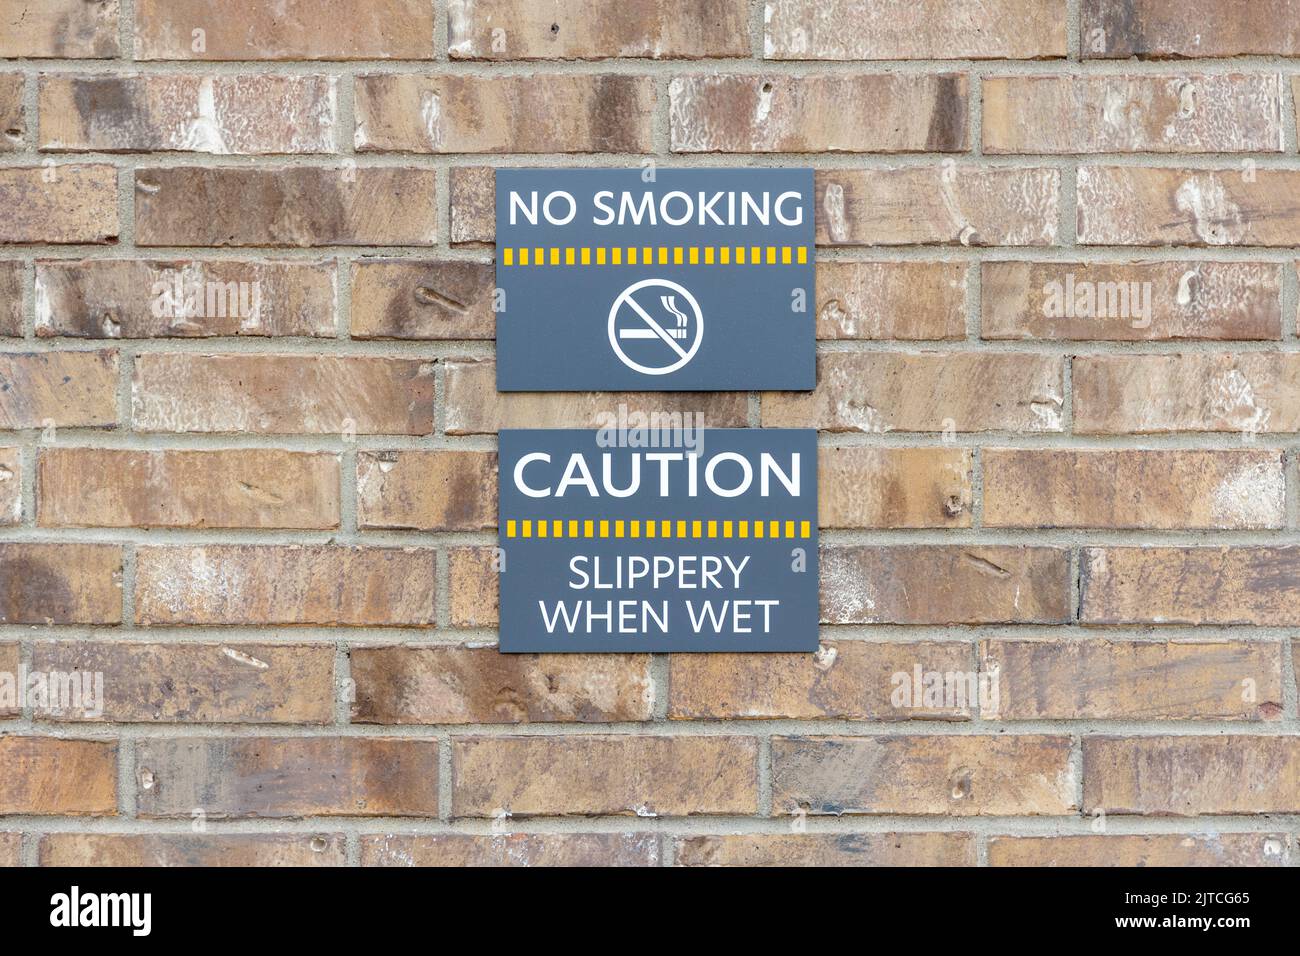 Panneaux d'avertissement ne pas fumer et ne pas être glissant lorsqu'il est mouillé sur un mur de briques, les étiquettes d'avertissement sur les plaques grises Banque D'Images